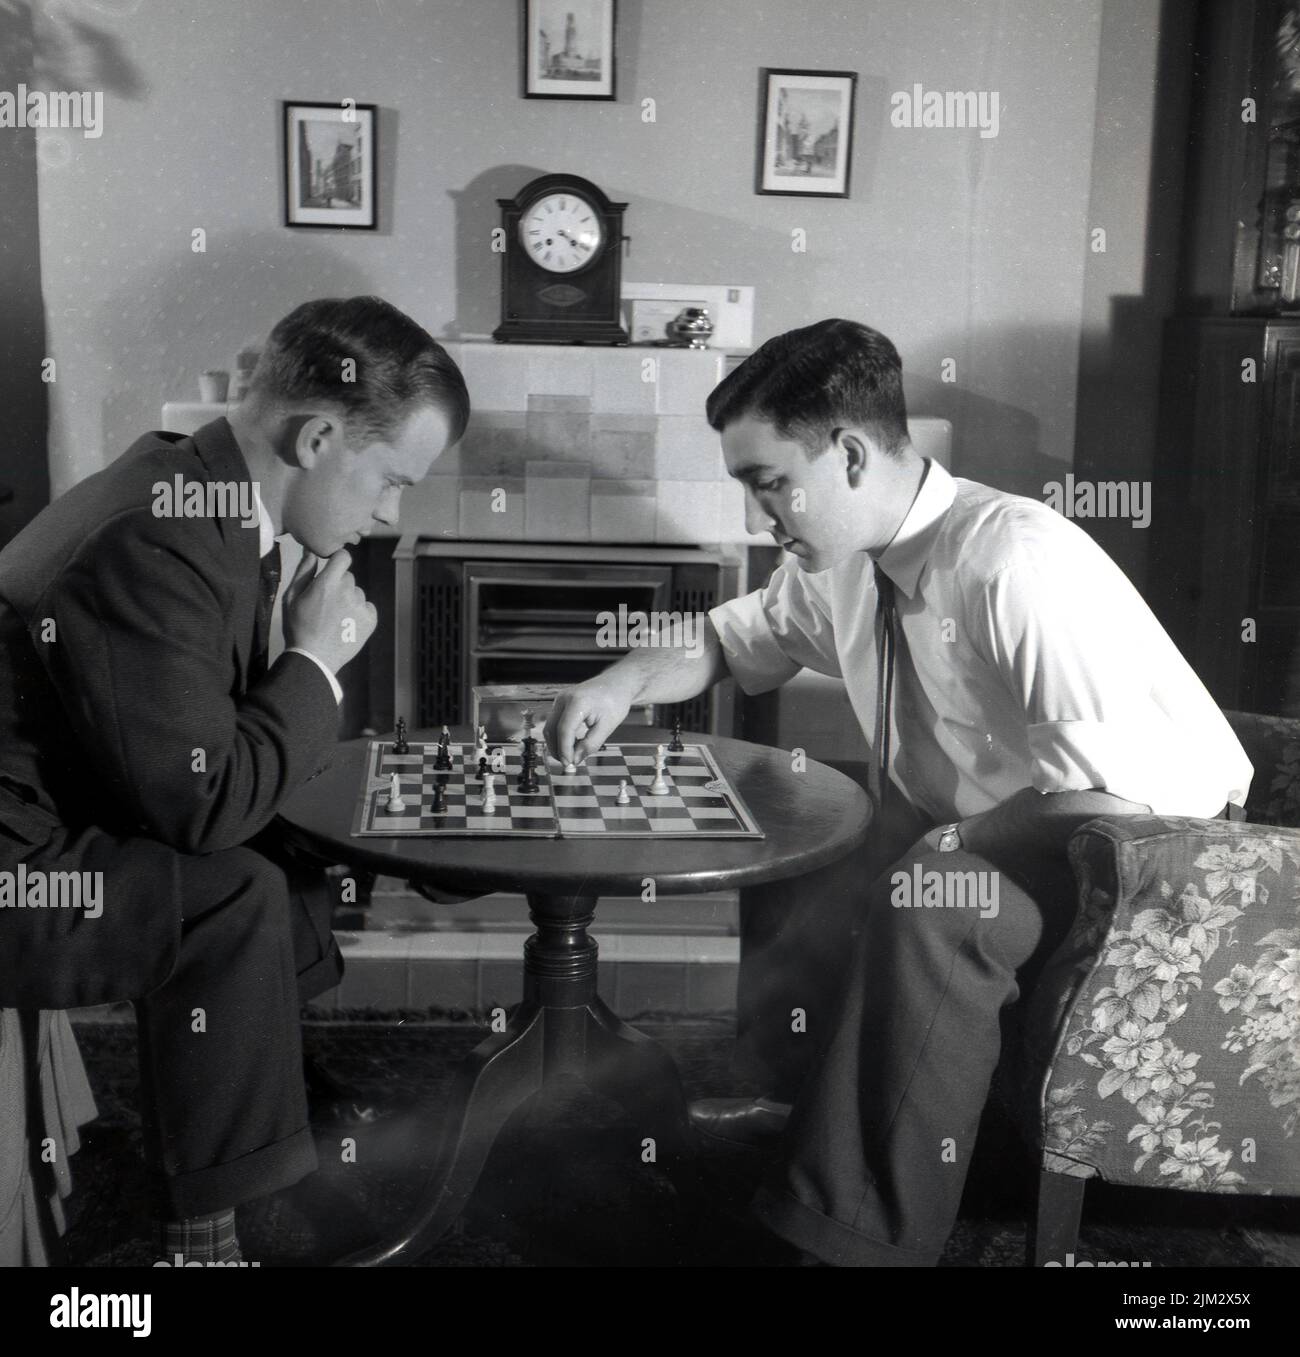 1950s, histórico, dos hombres con camisa y corbata, sentados en una pequeña mesa en una sala de ajedrez, Inglaterra, Reino Unido. Foto de stock